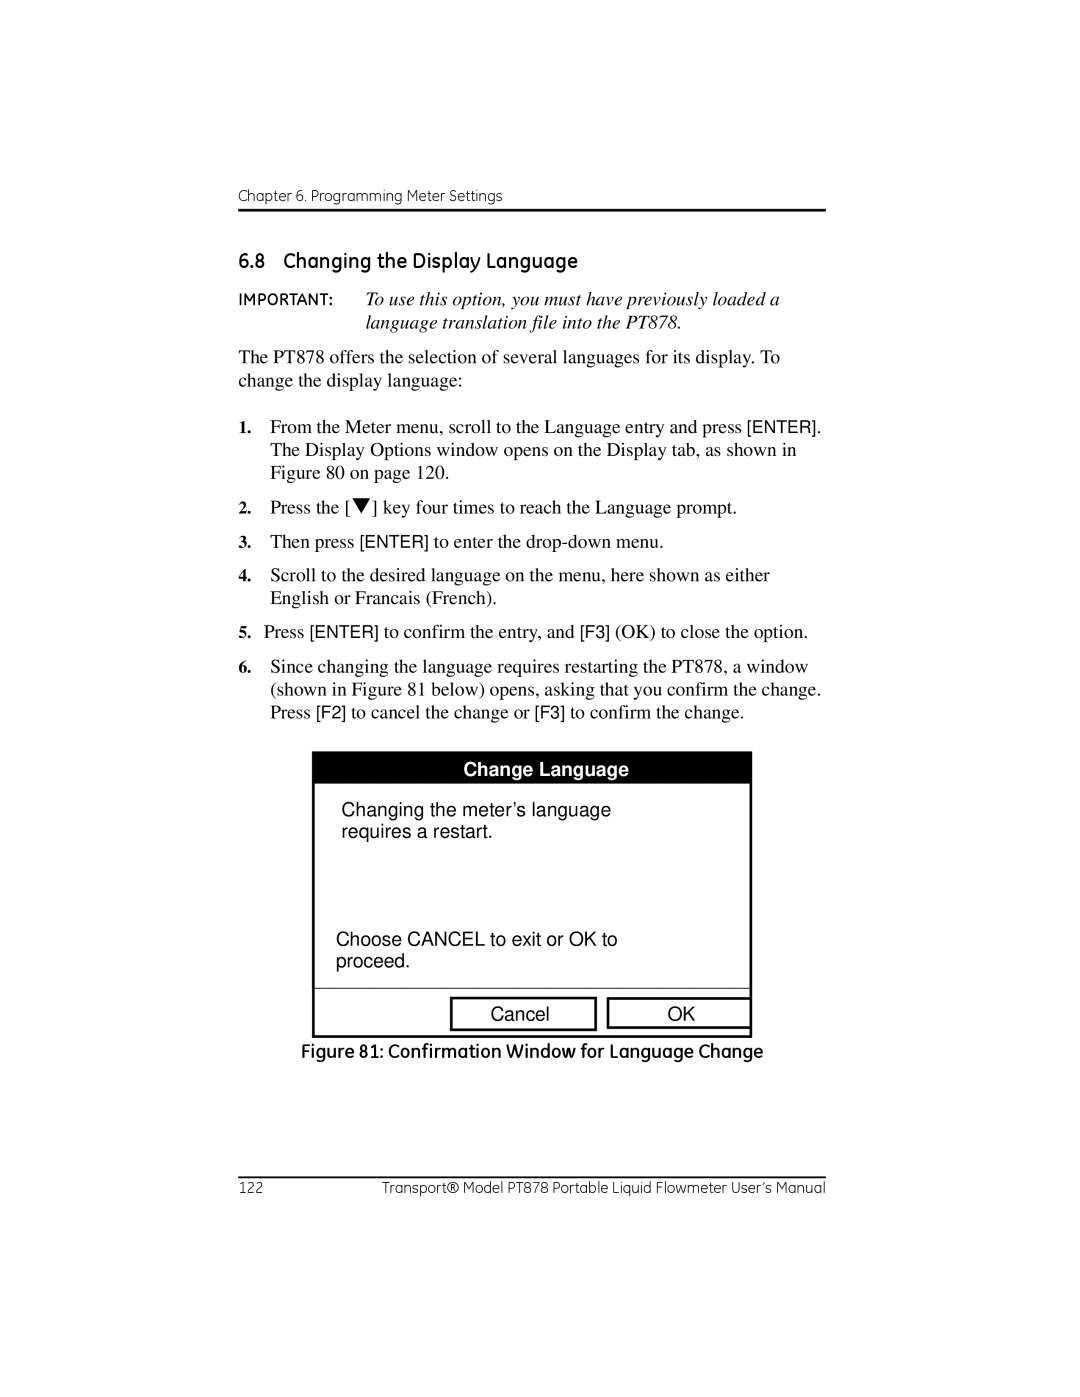 GE PT878 user manual Changing the Display Language, Change Language 